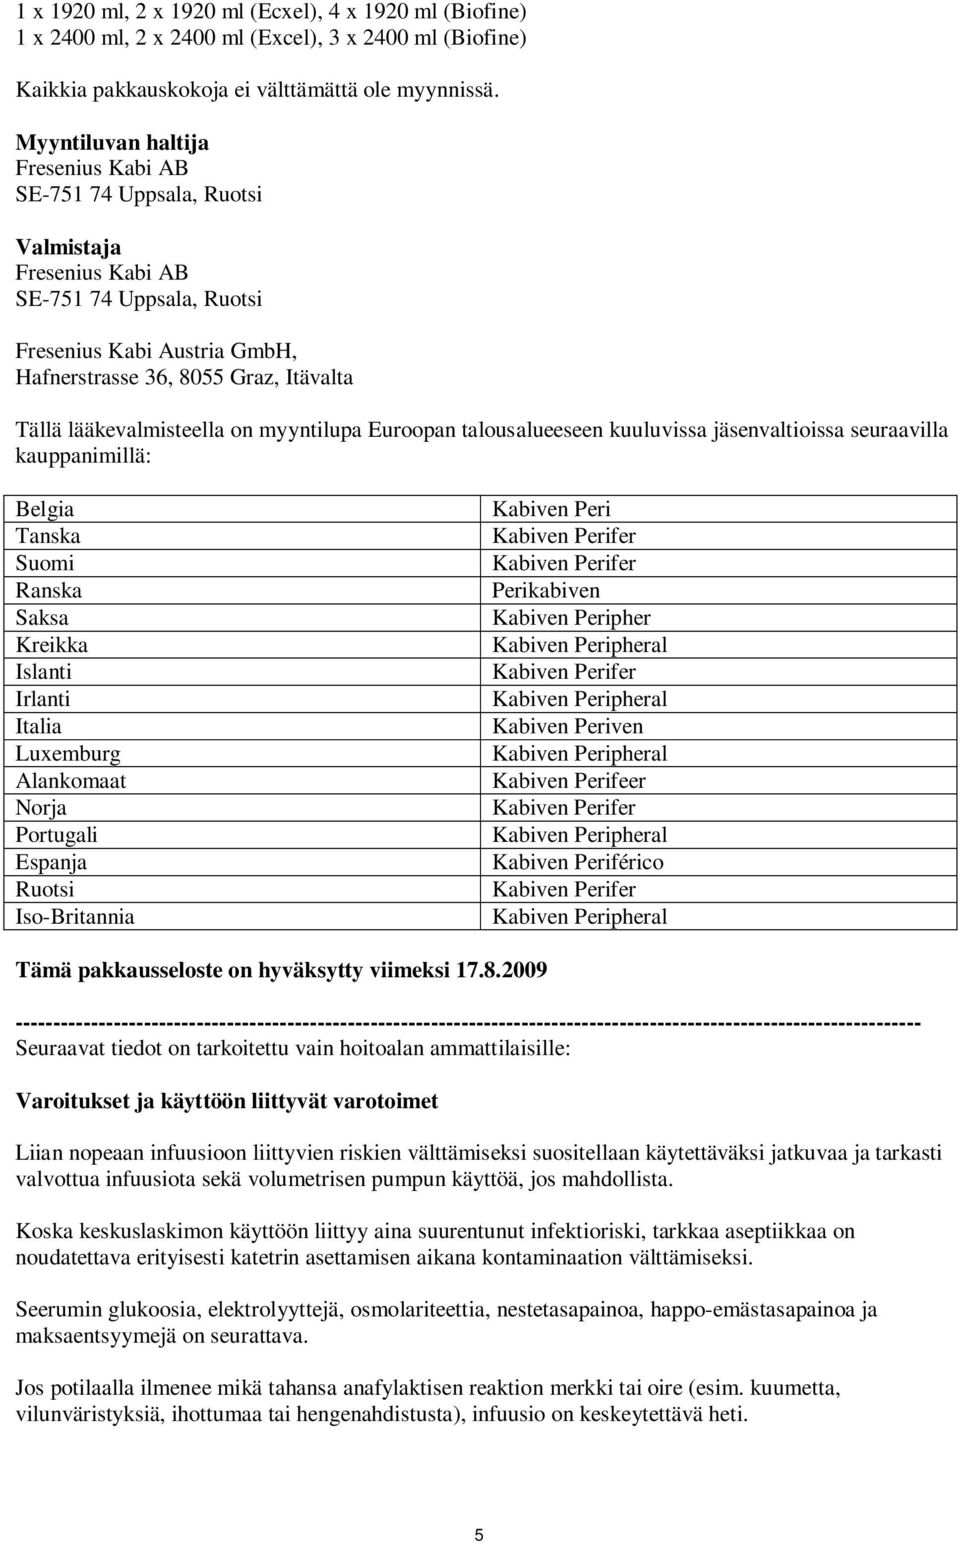 lääkevalmisteella on myyntilupa Euroopan talousalueeseen kuuluvissa jäsenvaltioissa seuraavilla kauppanimillä: Belgia Tanska Suomi Ranska Saksa Kreikka Islanti Irlanti Italia Luxemburg Alankomaat